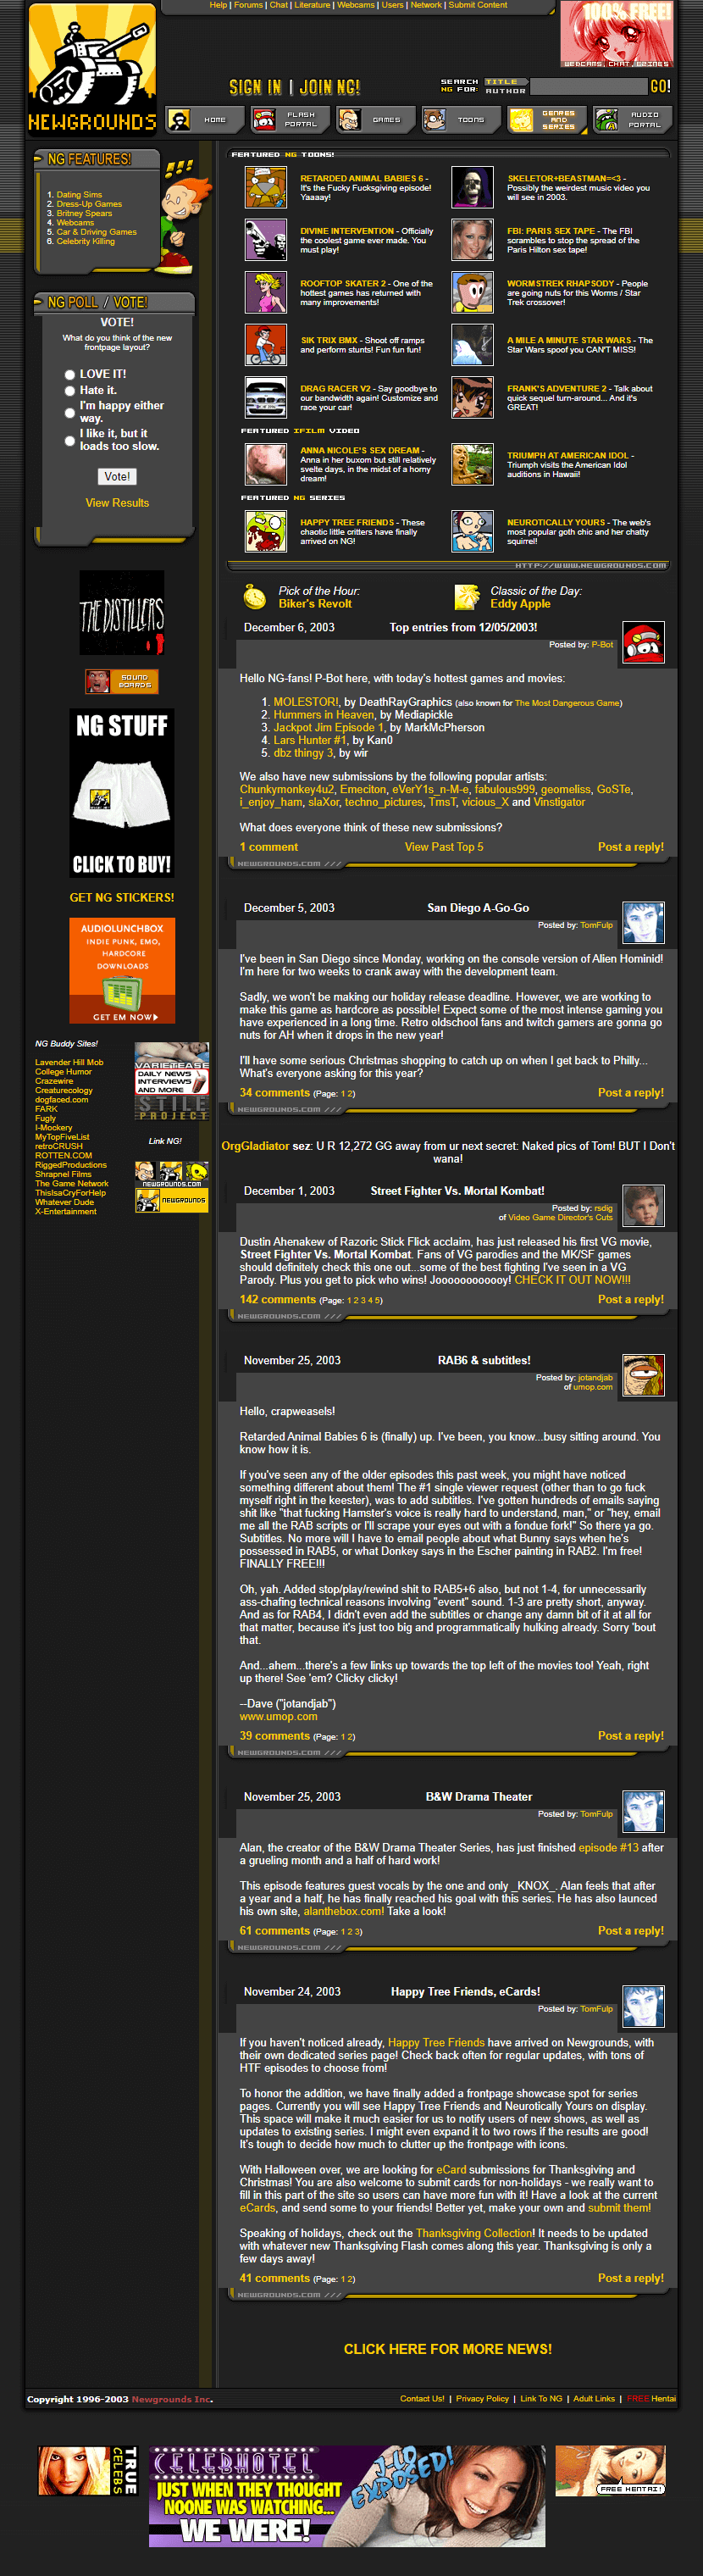 Newgrounds website in 2003